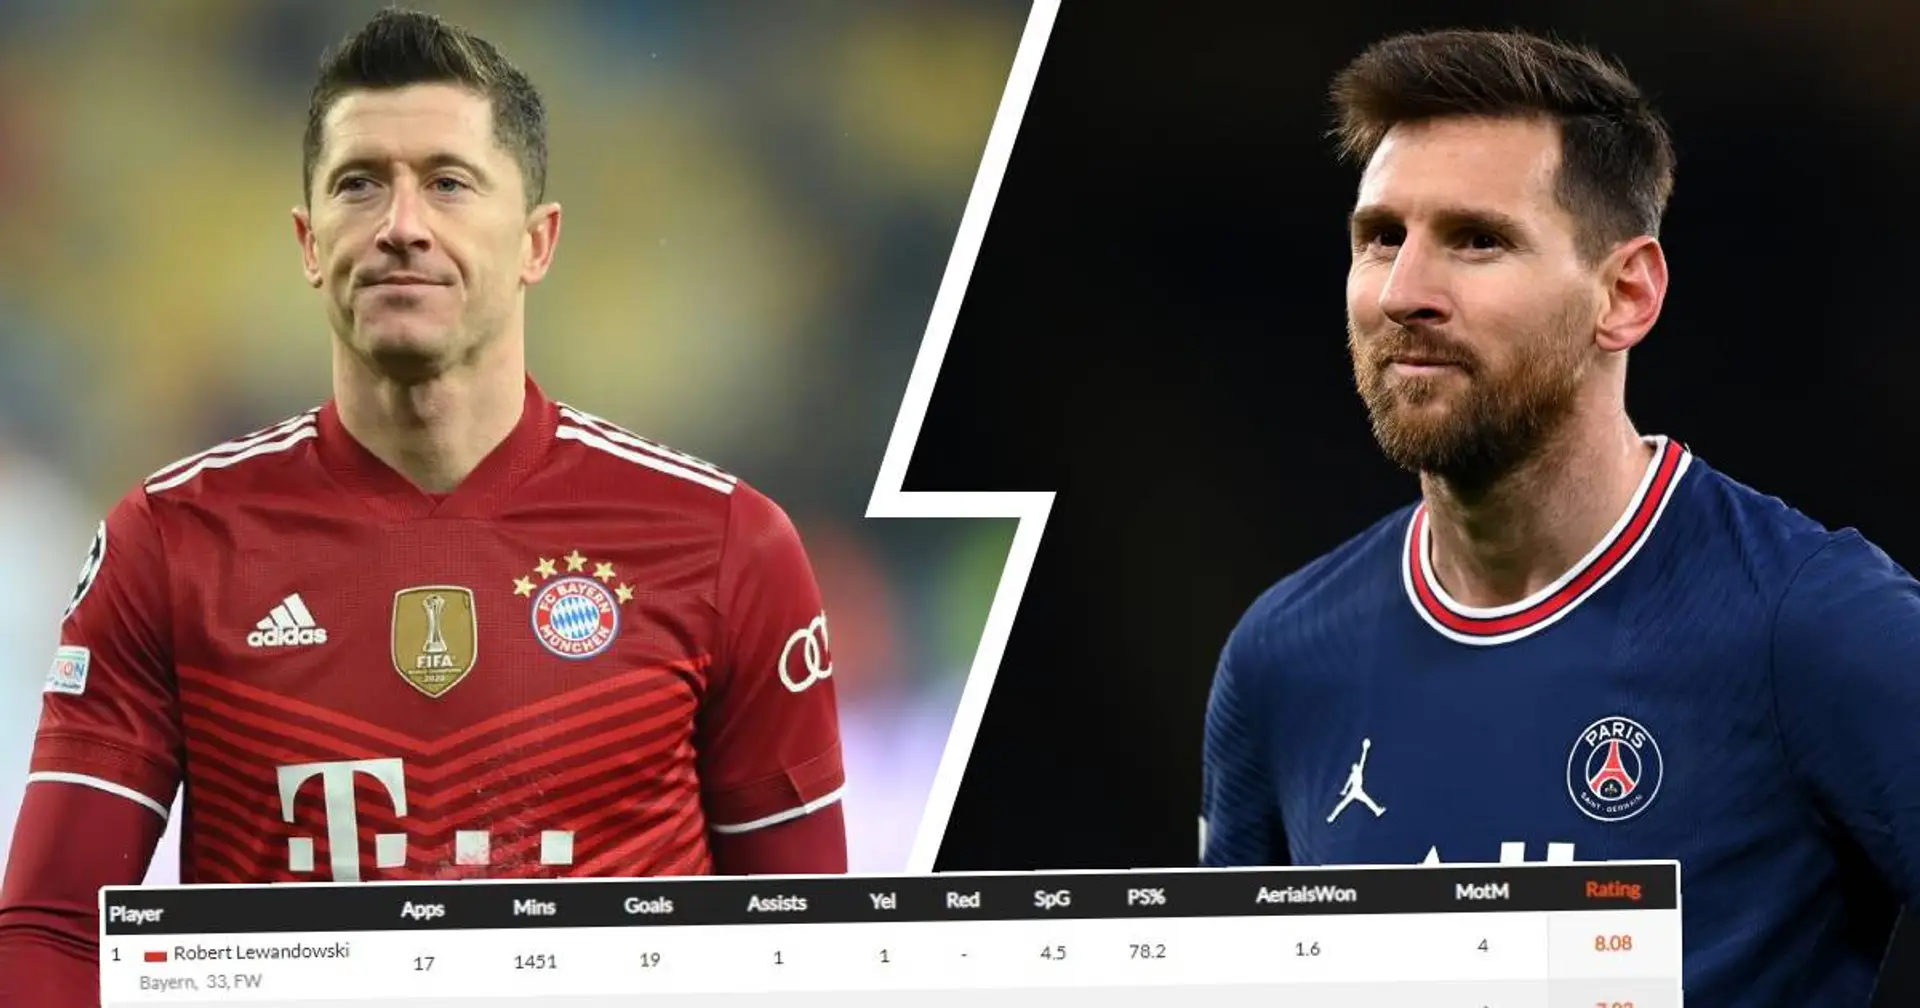 Beste Spieler aus Top-5-Ligen Europas 2021/22 von Whoscored: Lewandowski ganz oben, Messi nicht einmal in der Top-10!